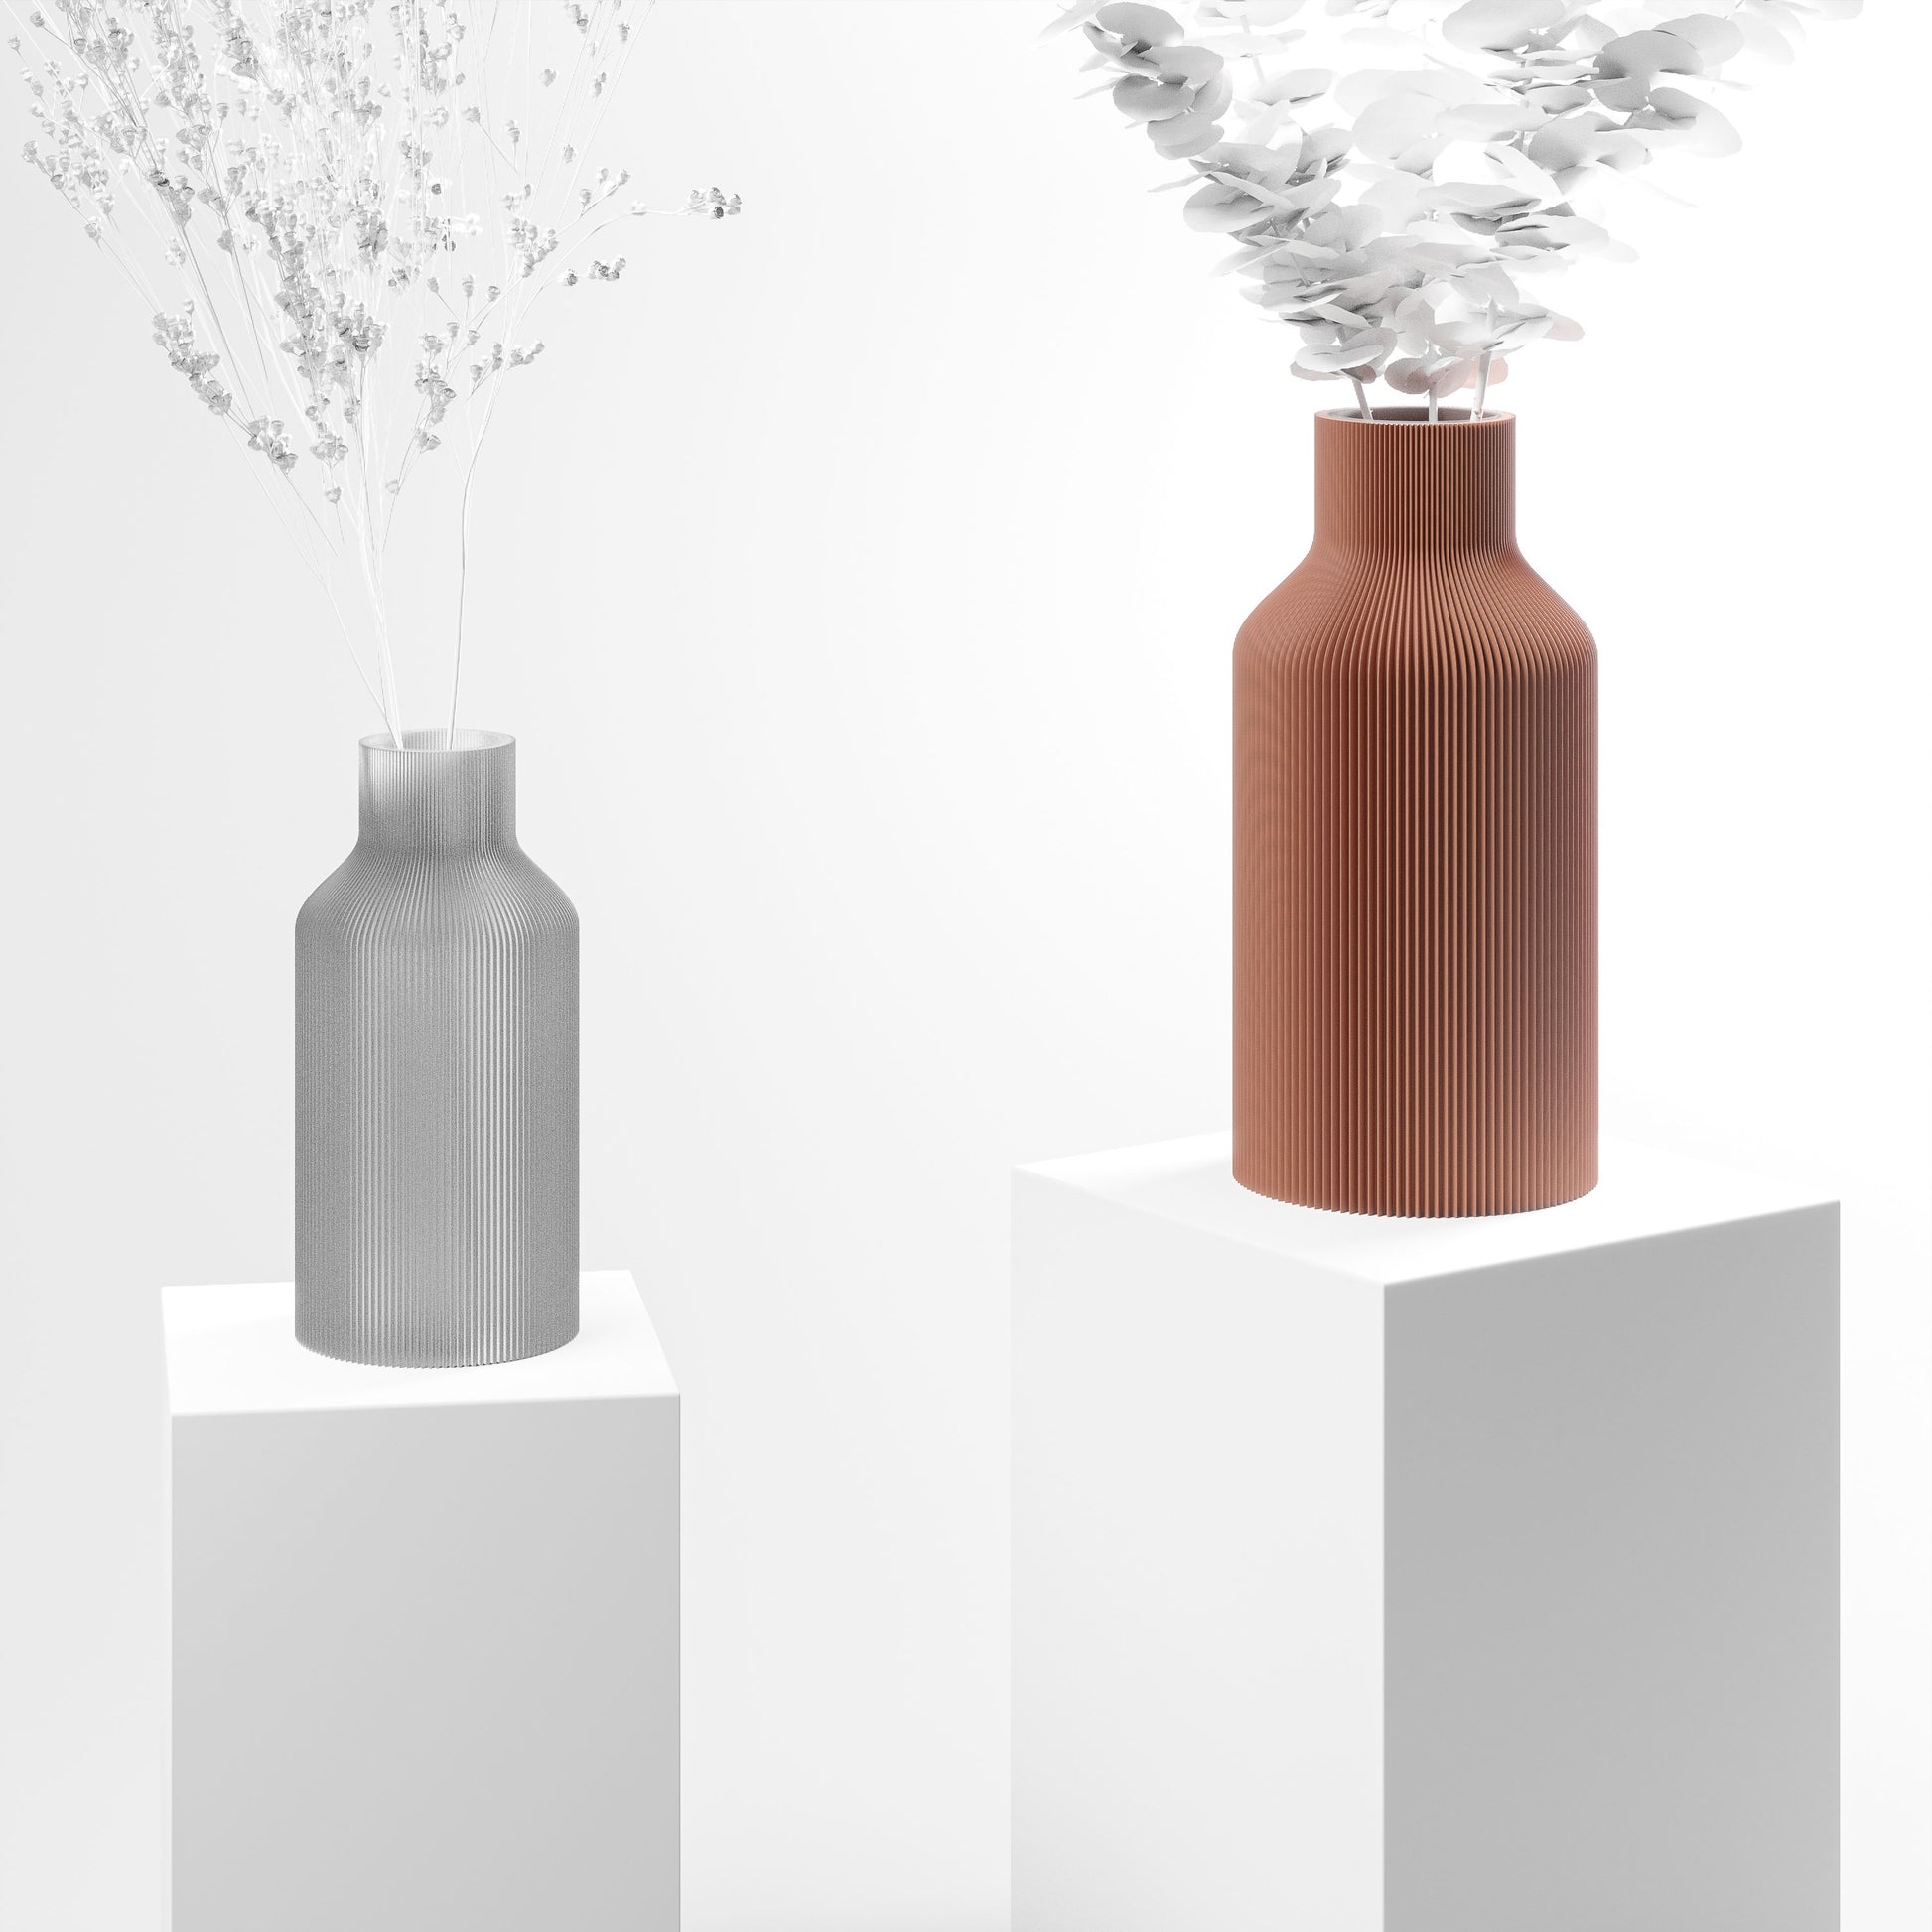 Stylische 3D Druck Vase mit feinen Rillen | 100% recyclebar | Form: Flasche | Farbe: Terracotta matt groß 